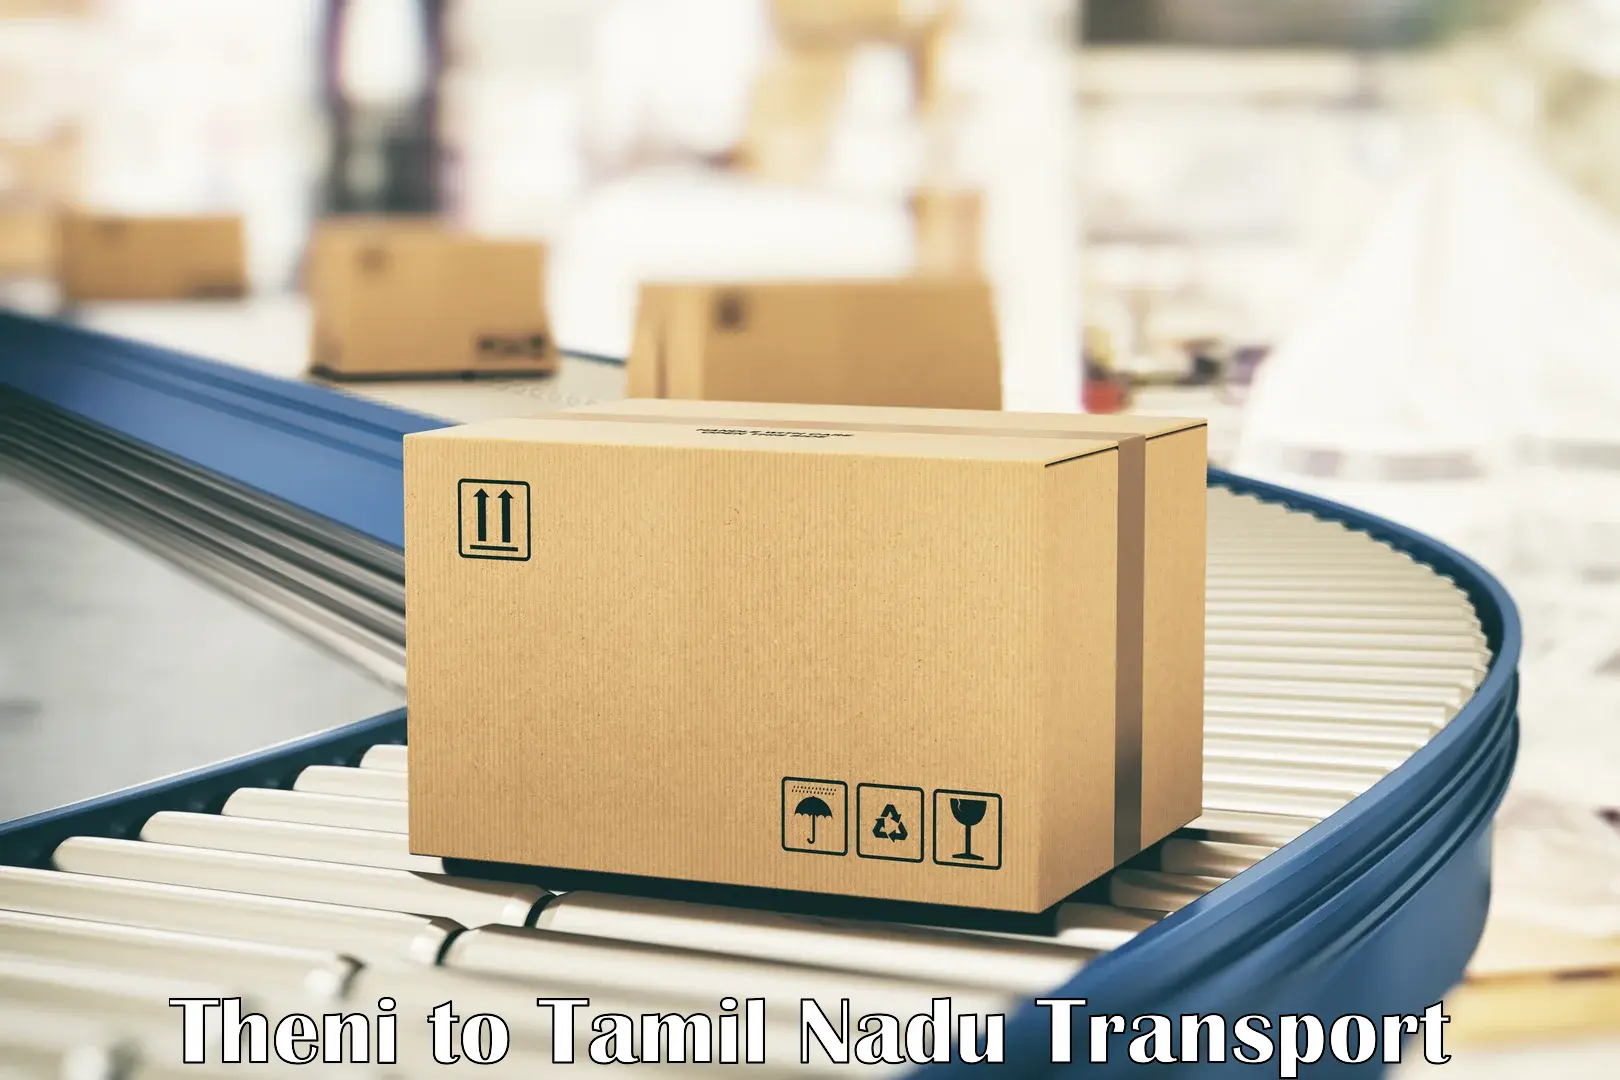 Logistics transportation services Theni to Villupuram